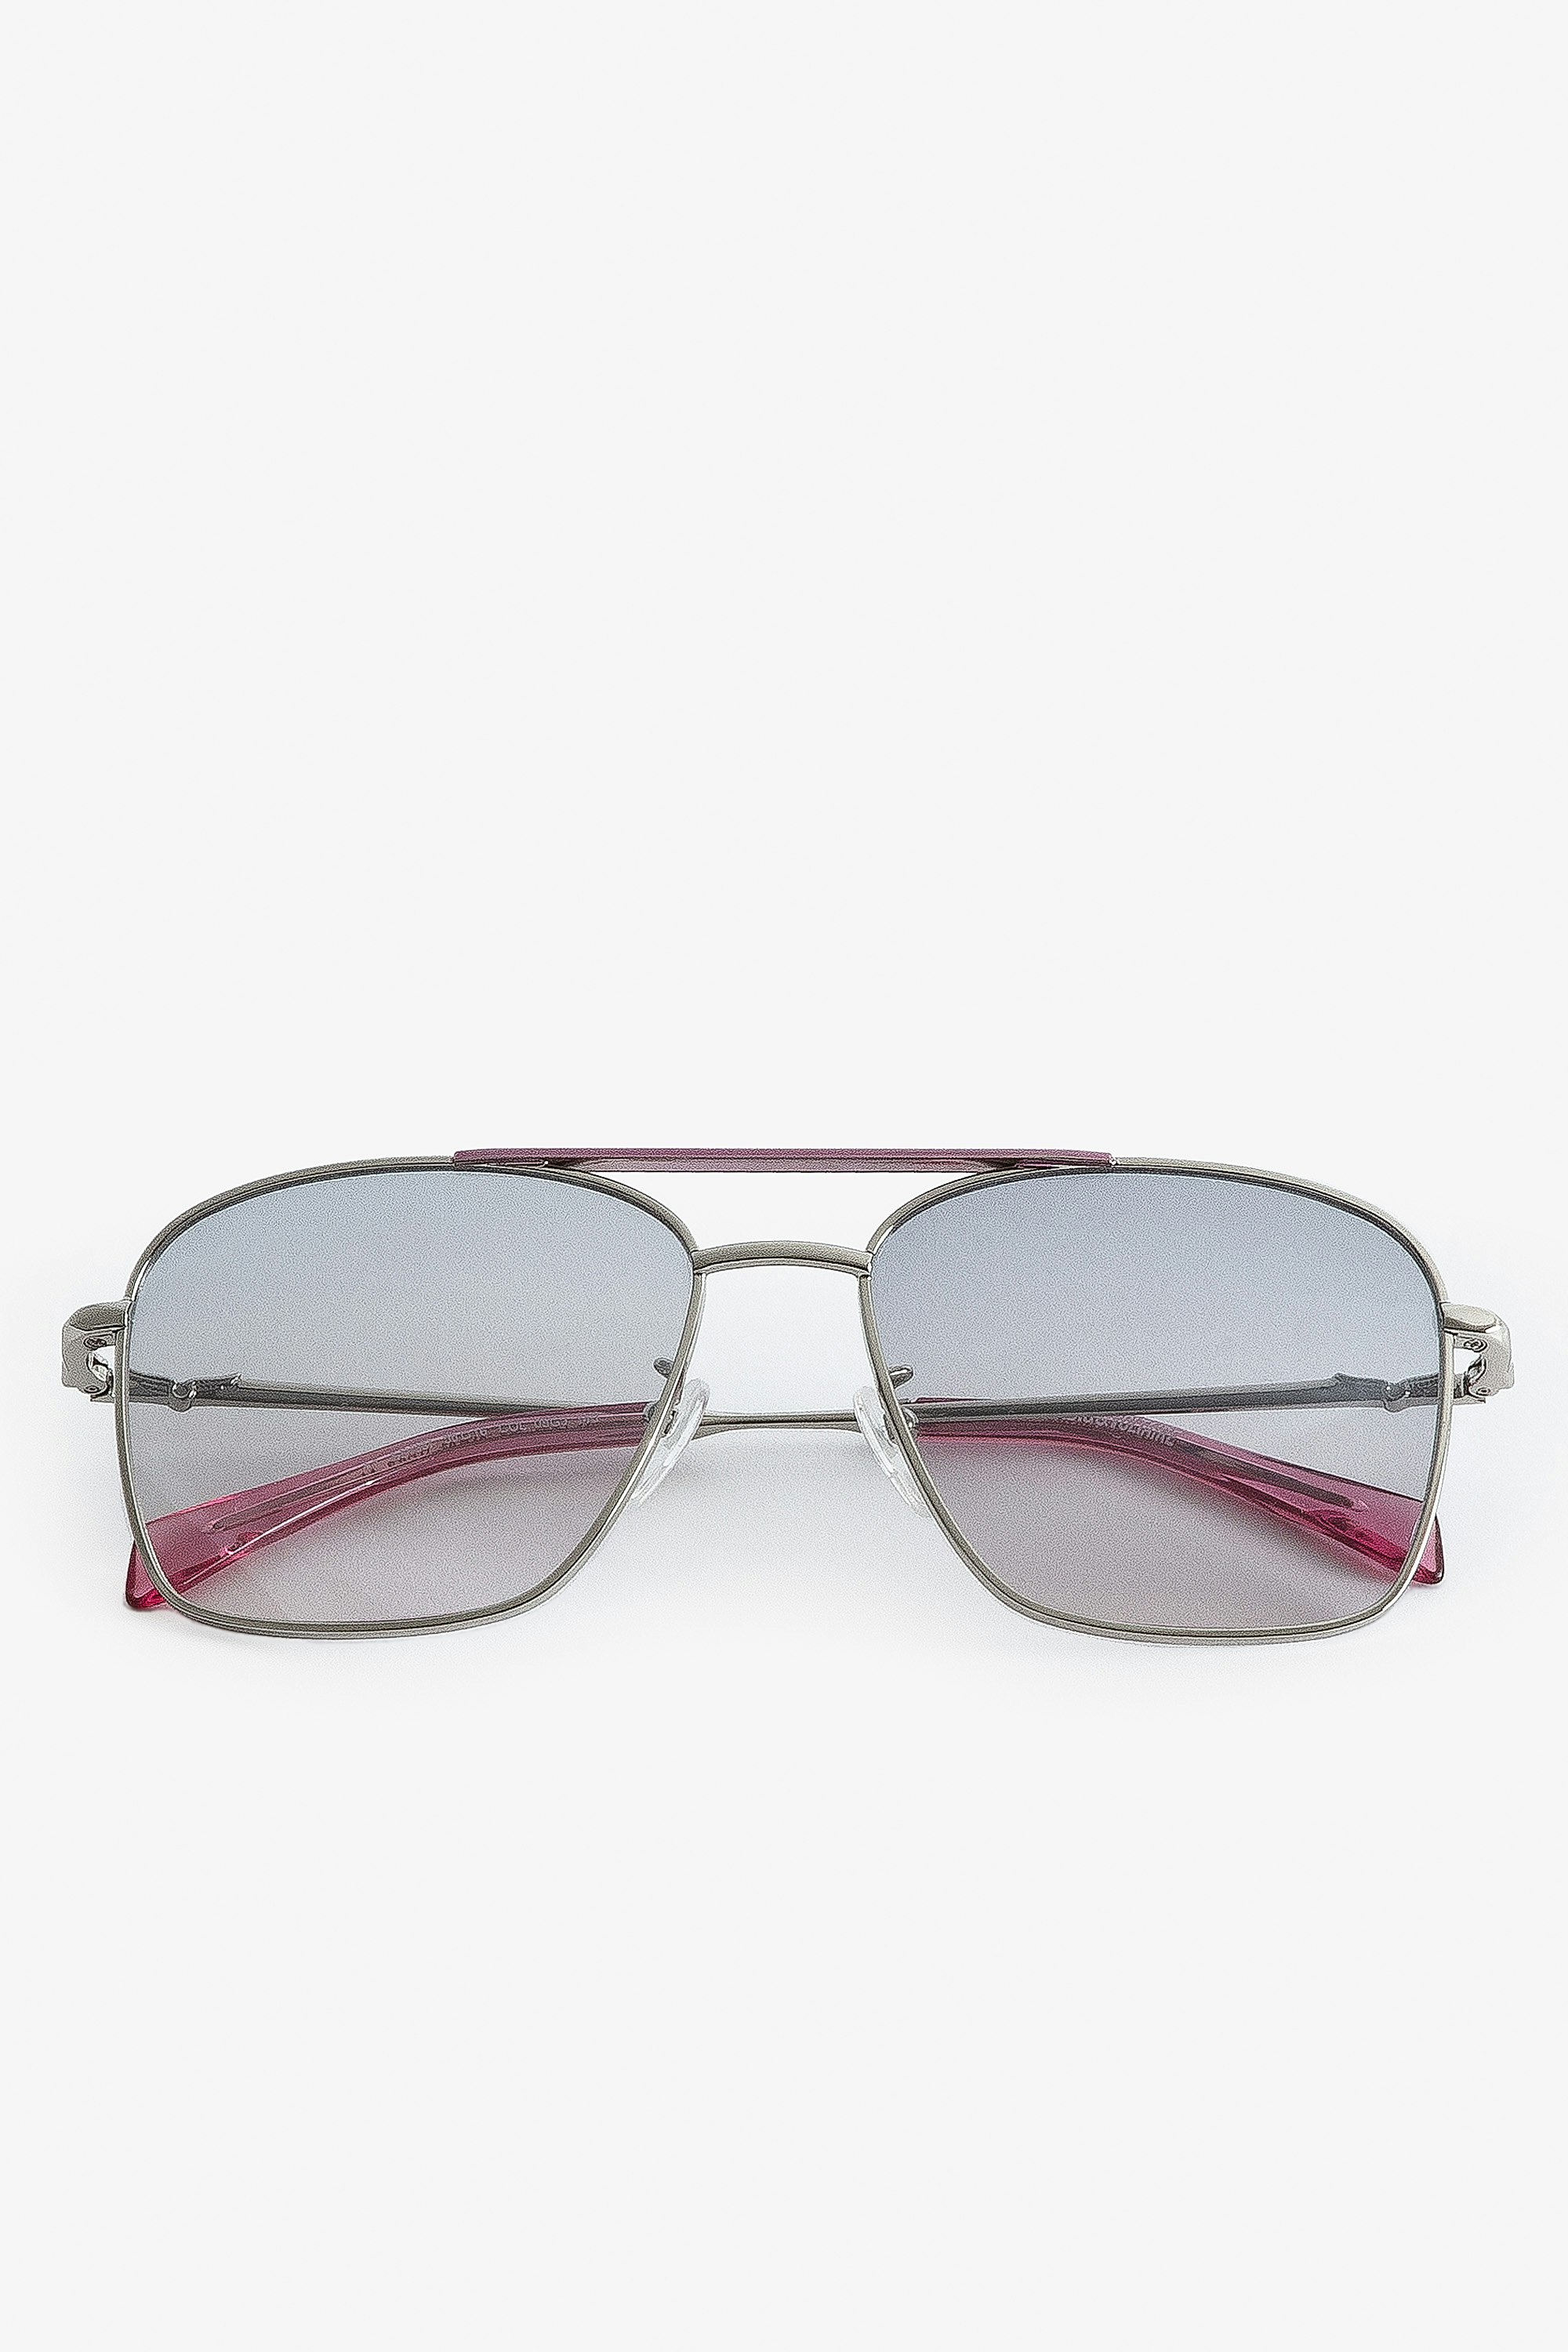 Sonnenbrille Wings Aviator Unisex-Pilotensonnenbrille aus rosafarbenem Metall mit Rauchgläsern.